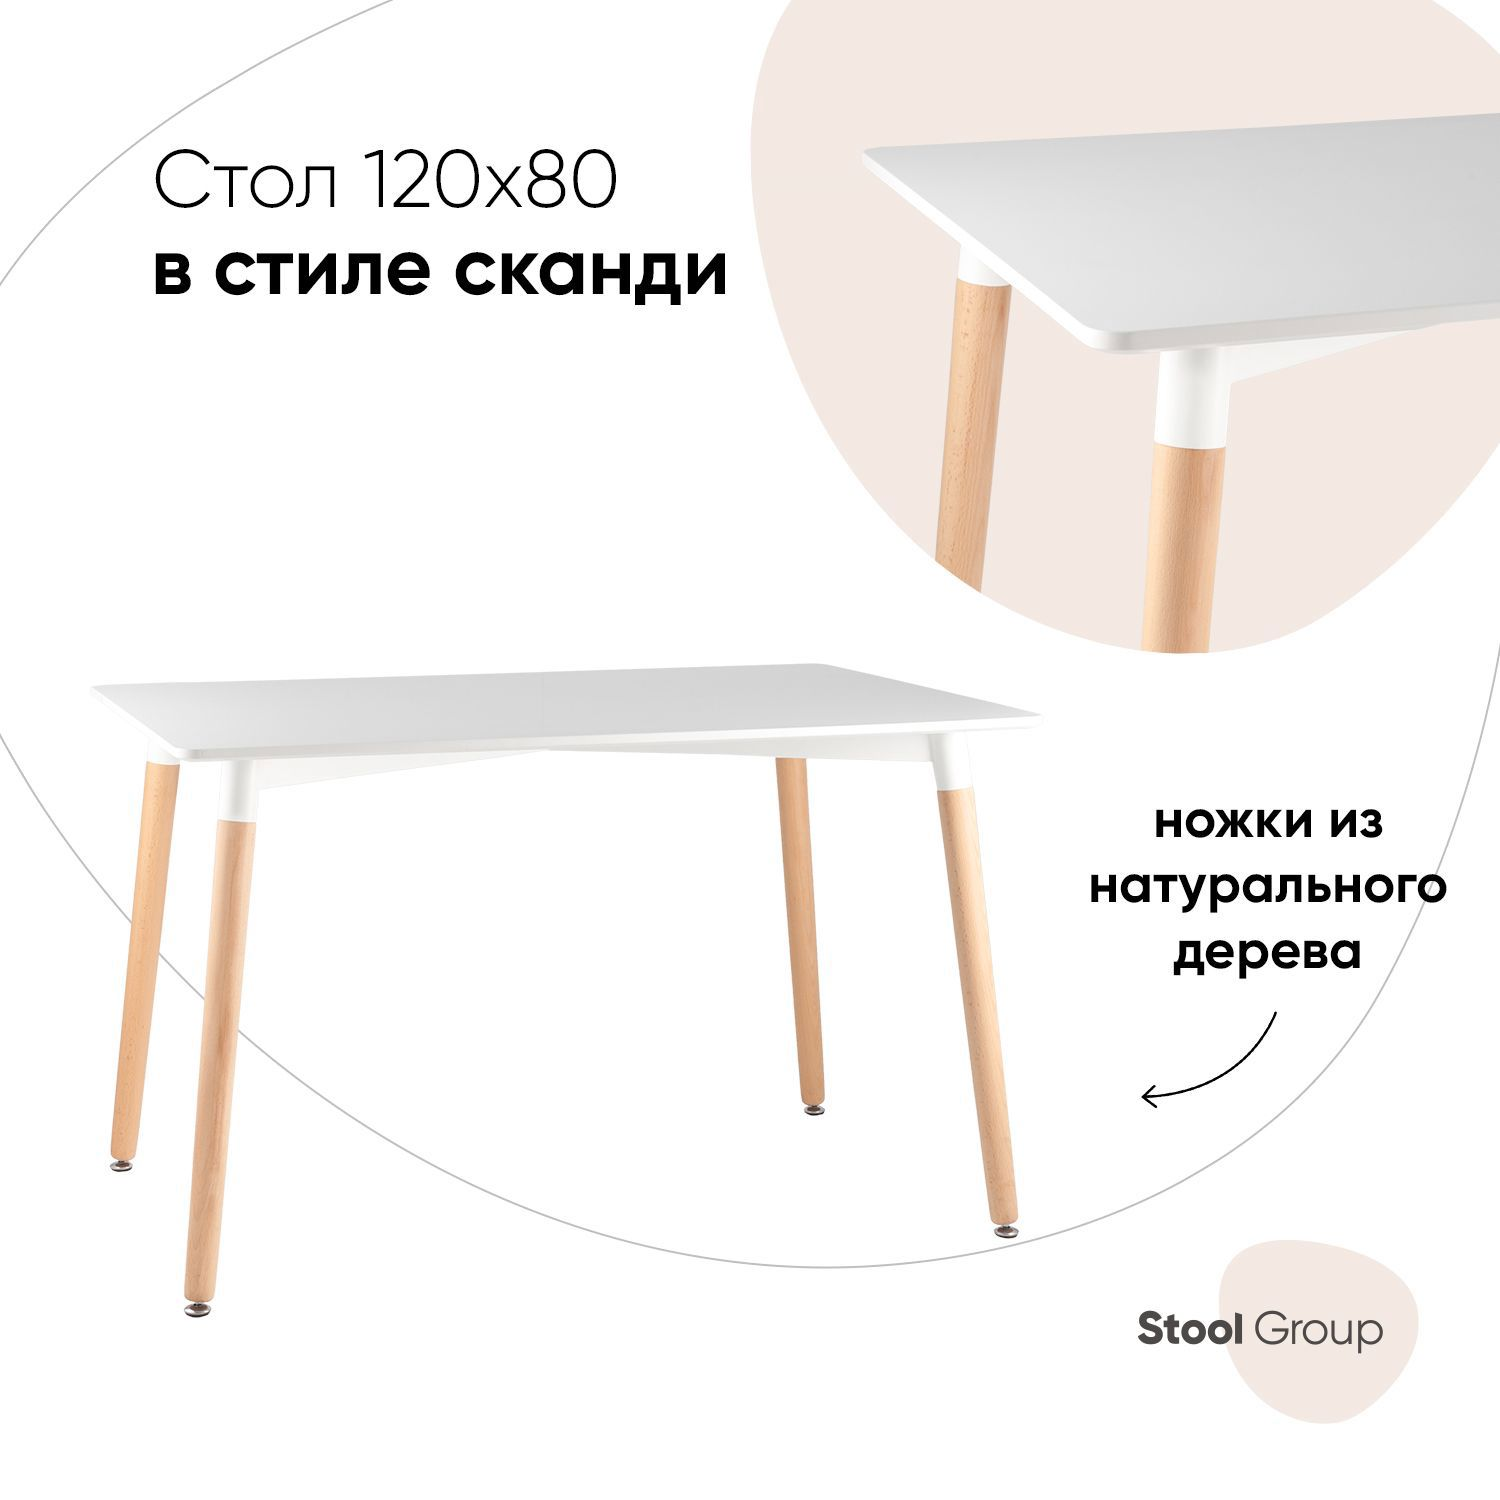 91104953 Кухонный стол прямоугольный Oslo 120x120 см МДФ цвет белый BAZHOU CITY BIAOXIANG FURNITURE CO.,LTD STLM-0486327 СТУЛ ГРУП